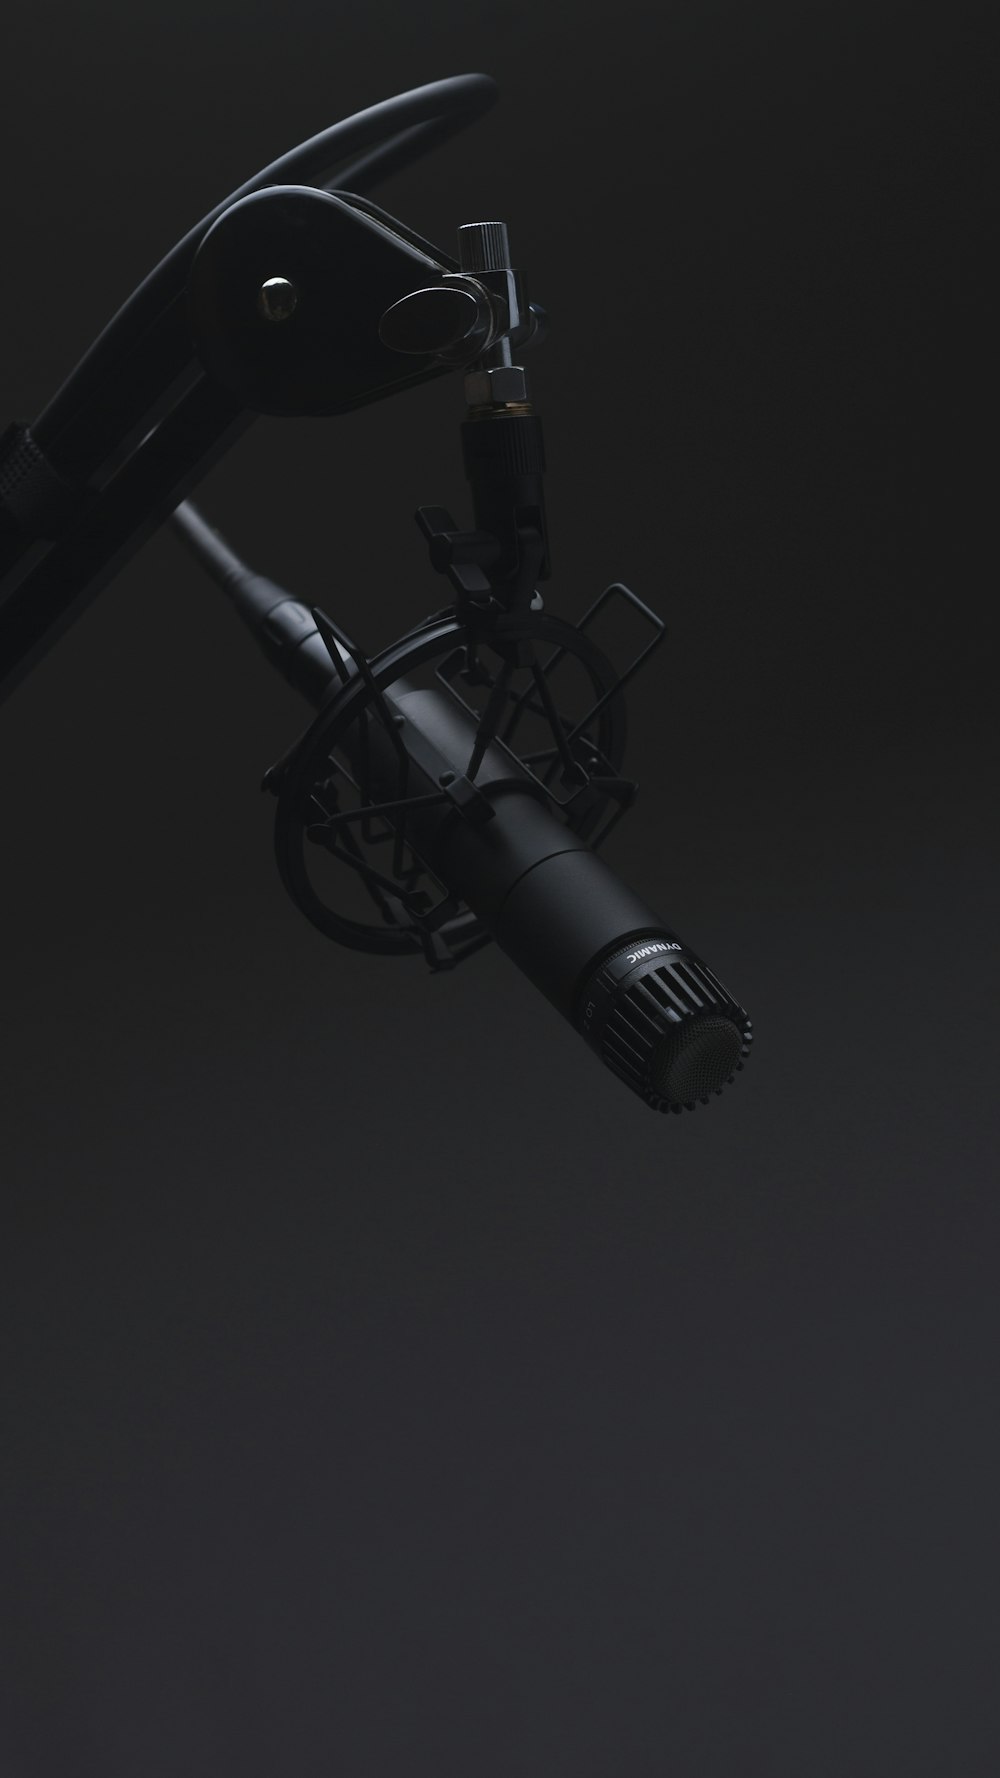 schwarzes Mikrofon im abgedunkelten Raum